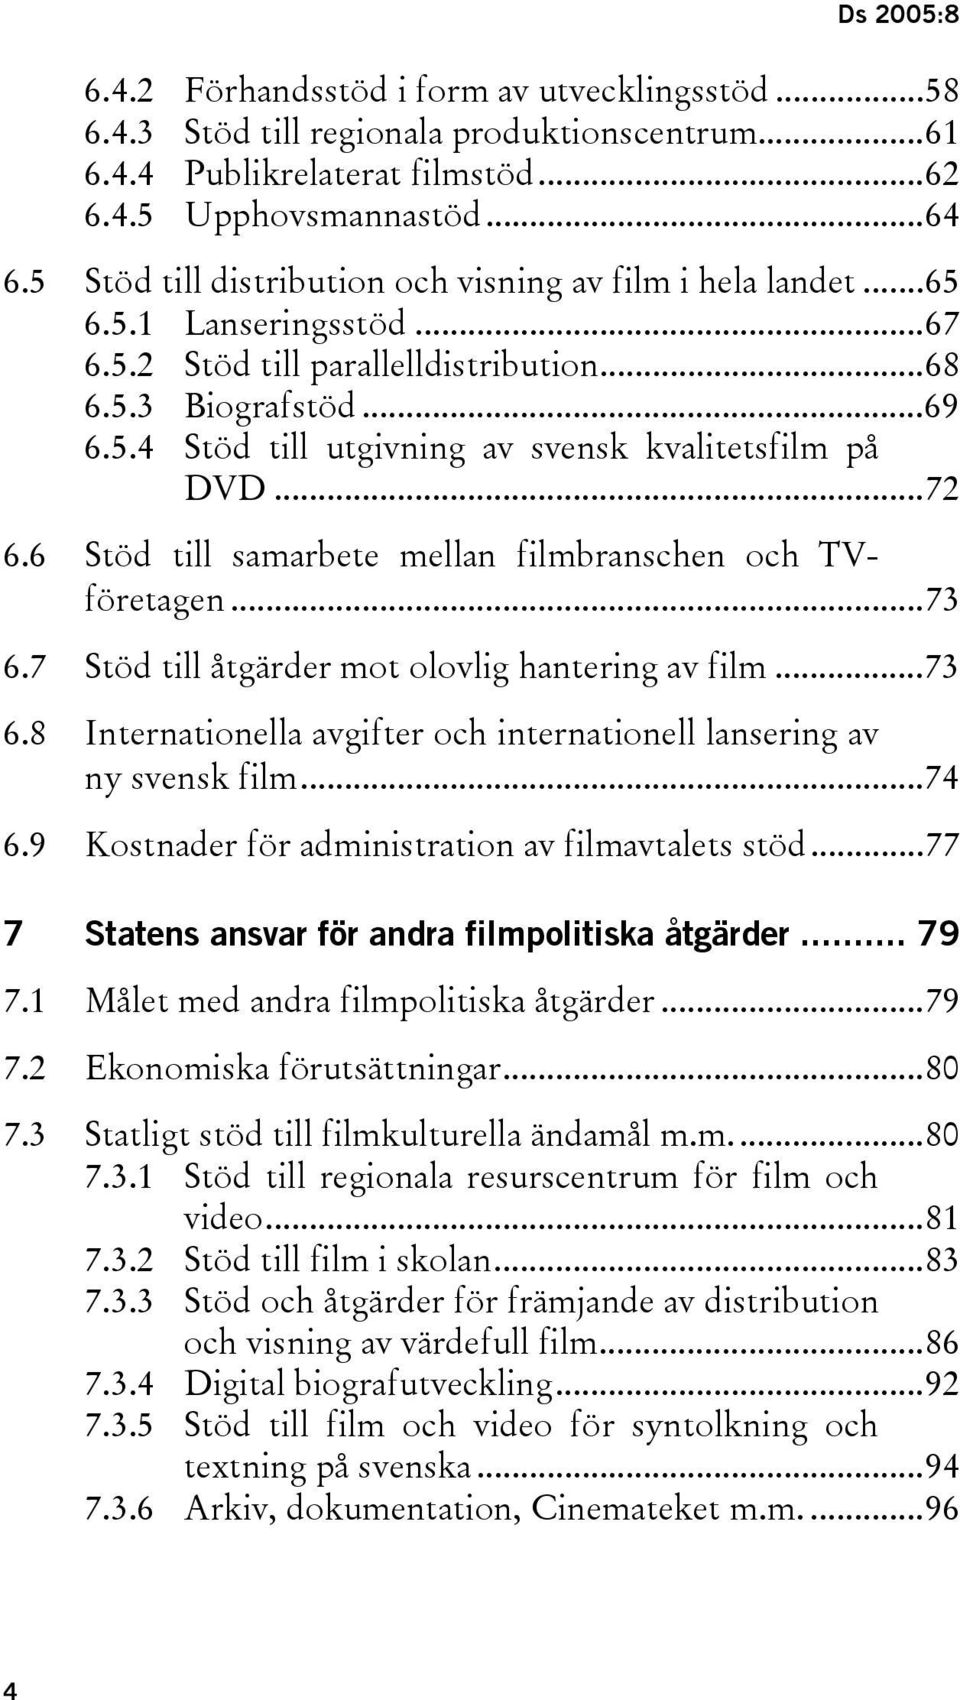 ..72 6.6 Stöd till samarbete mellan filmbranschen och TVföretagen...73 6.7 Stöd till åtgärder mot olovlig hantering av film...73 6.8 Internationella avgifter och internationell lansering av ny svensk film.